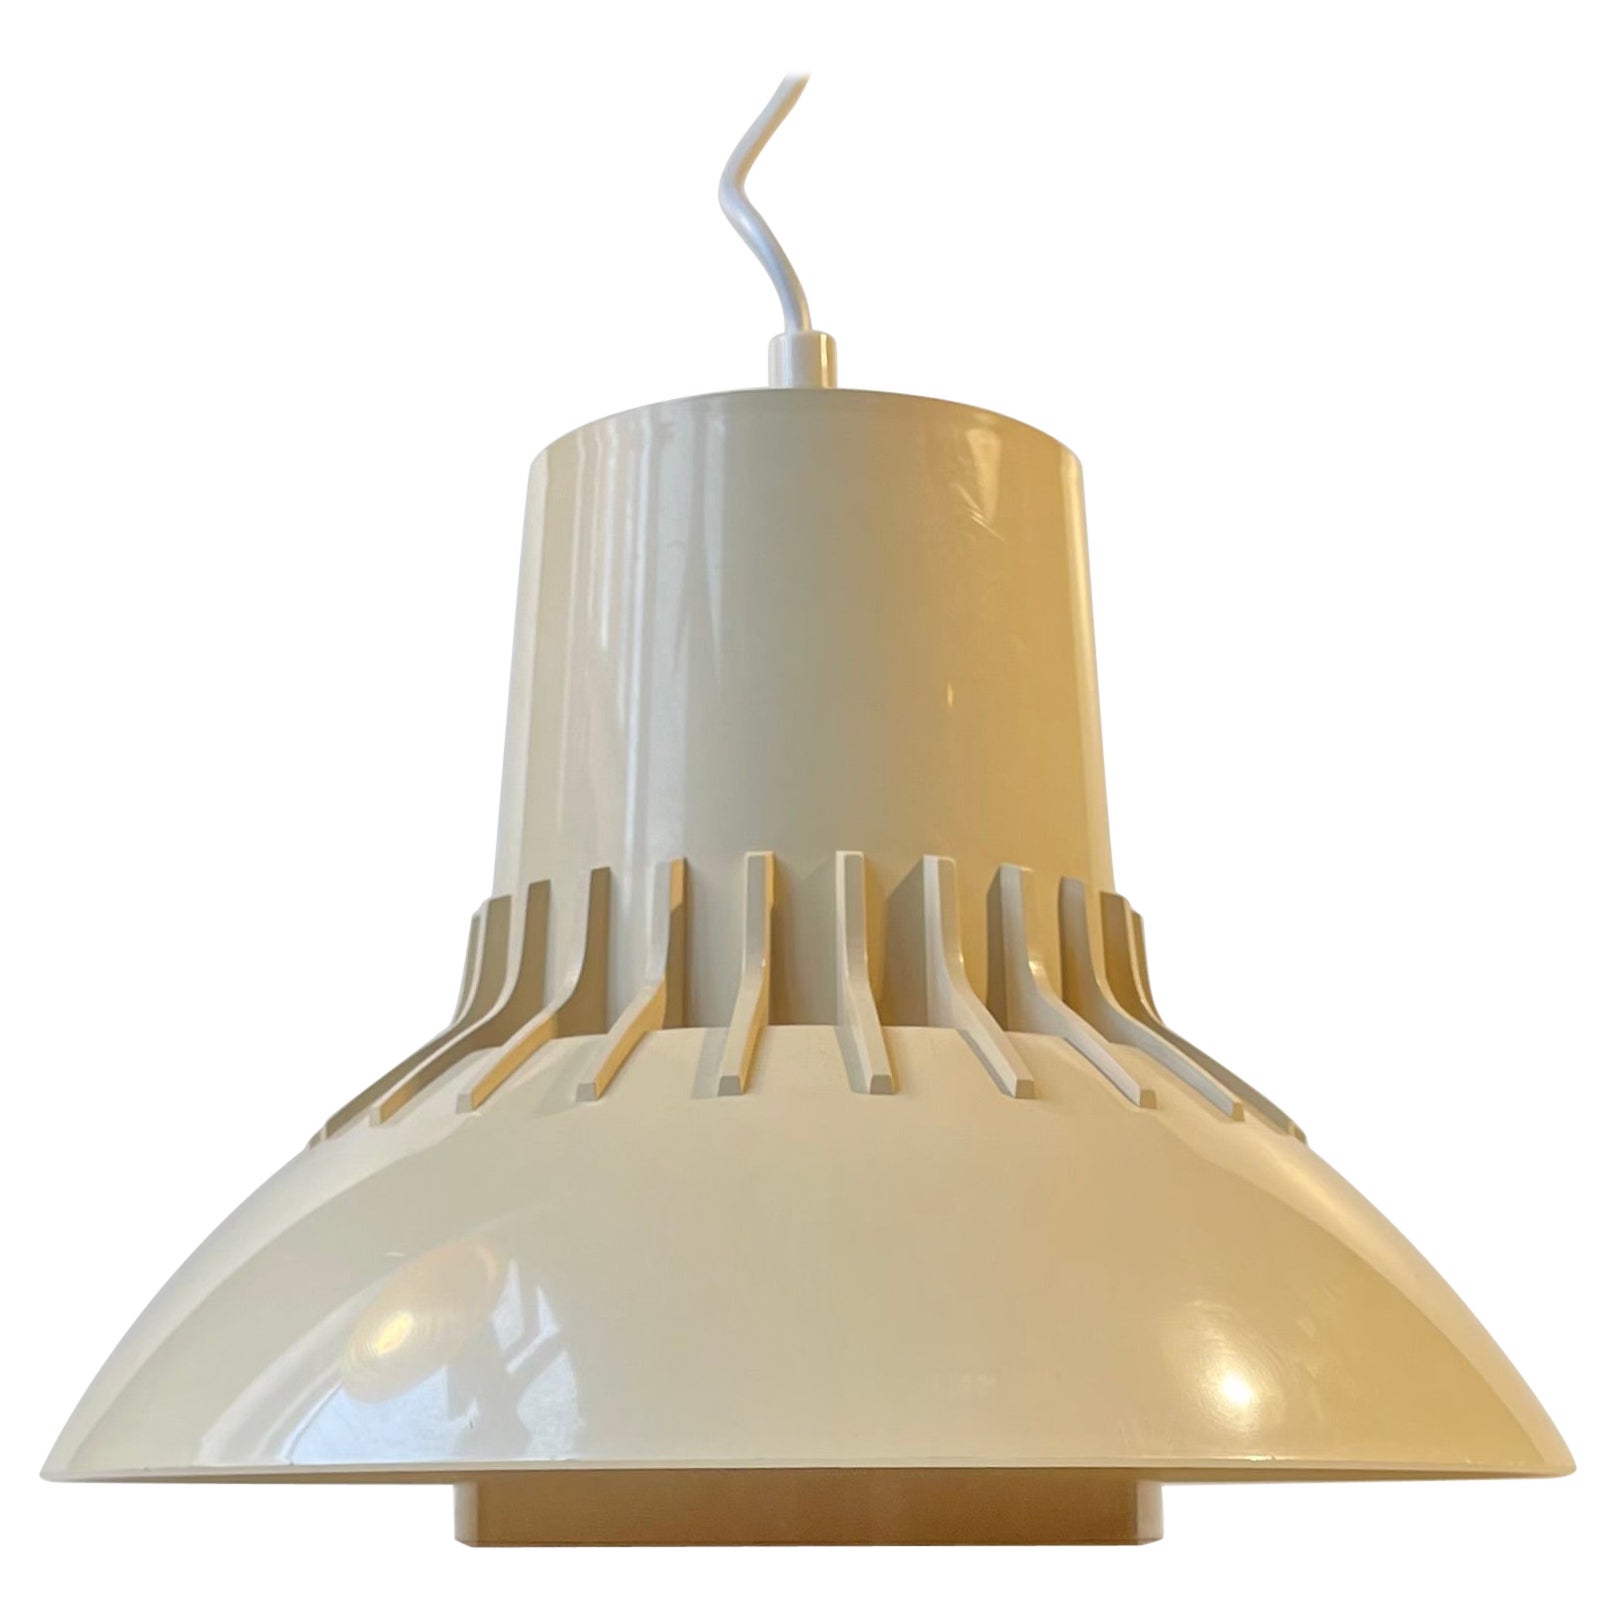 Danish Modern Svend Middelboe Ceiling Pendant Lamp in Cream Plastic, 1970s For Sale